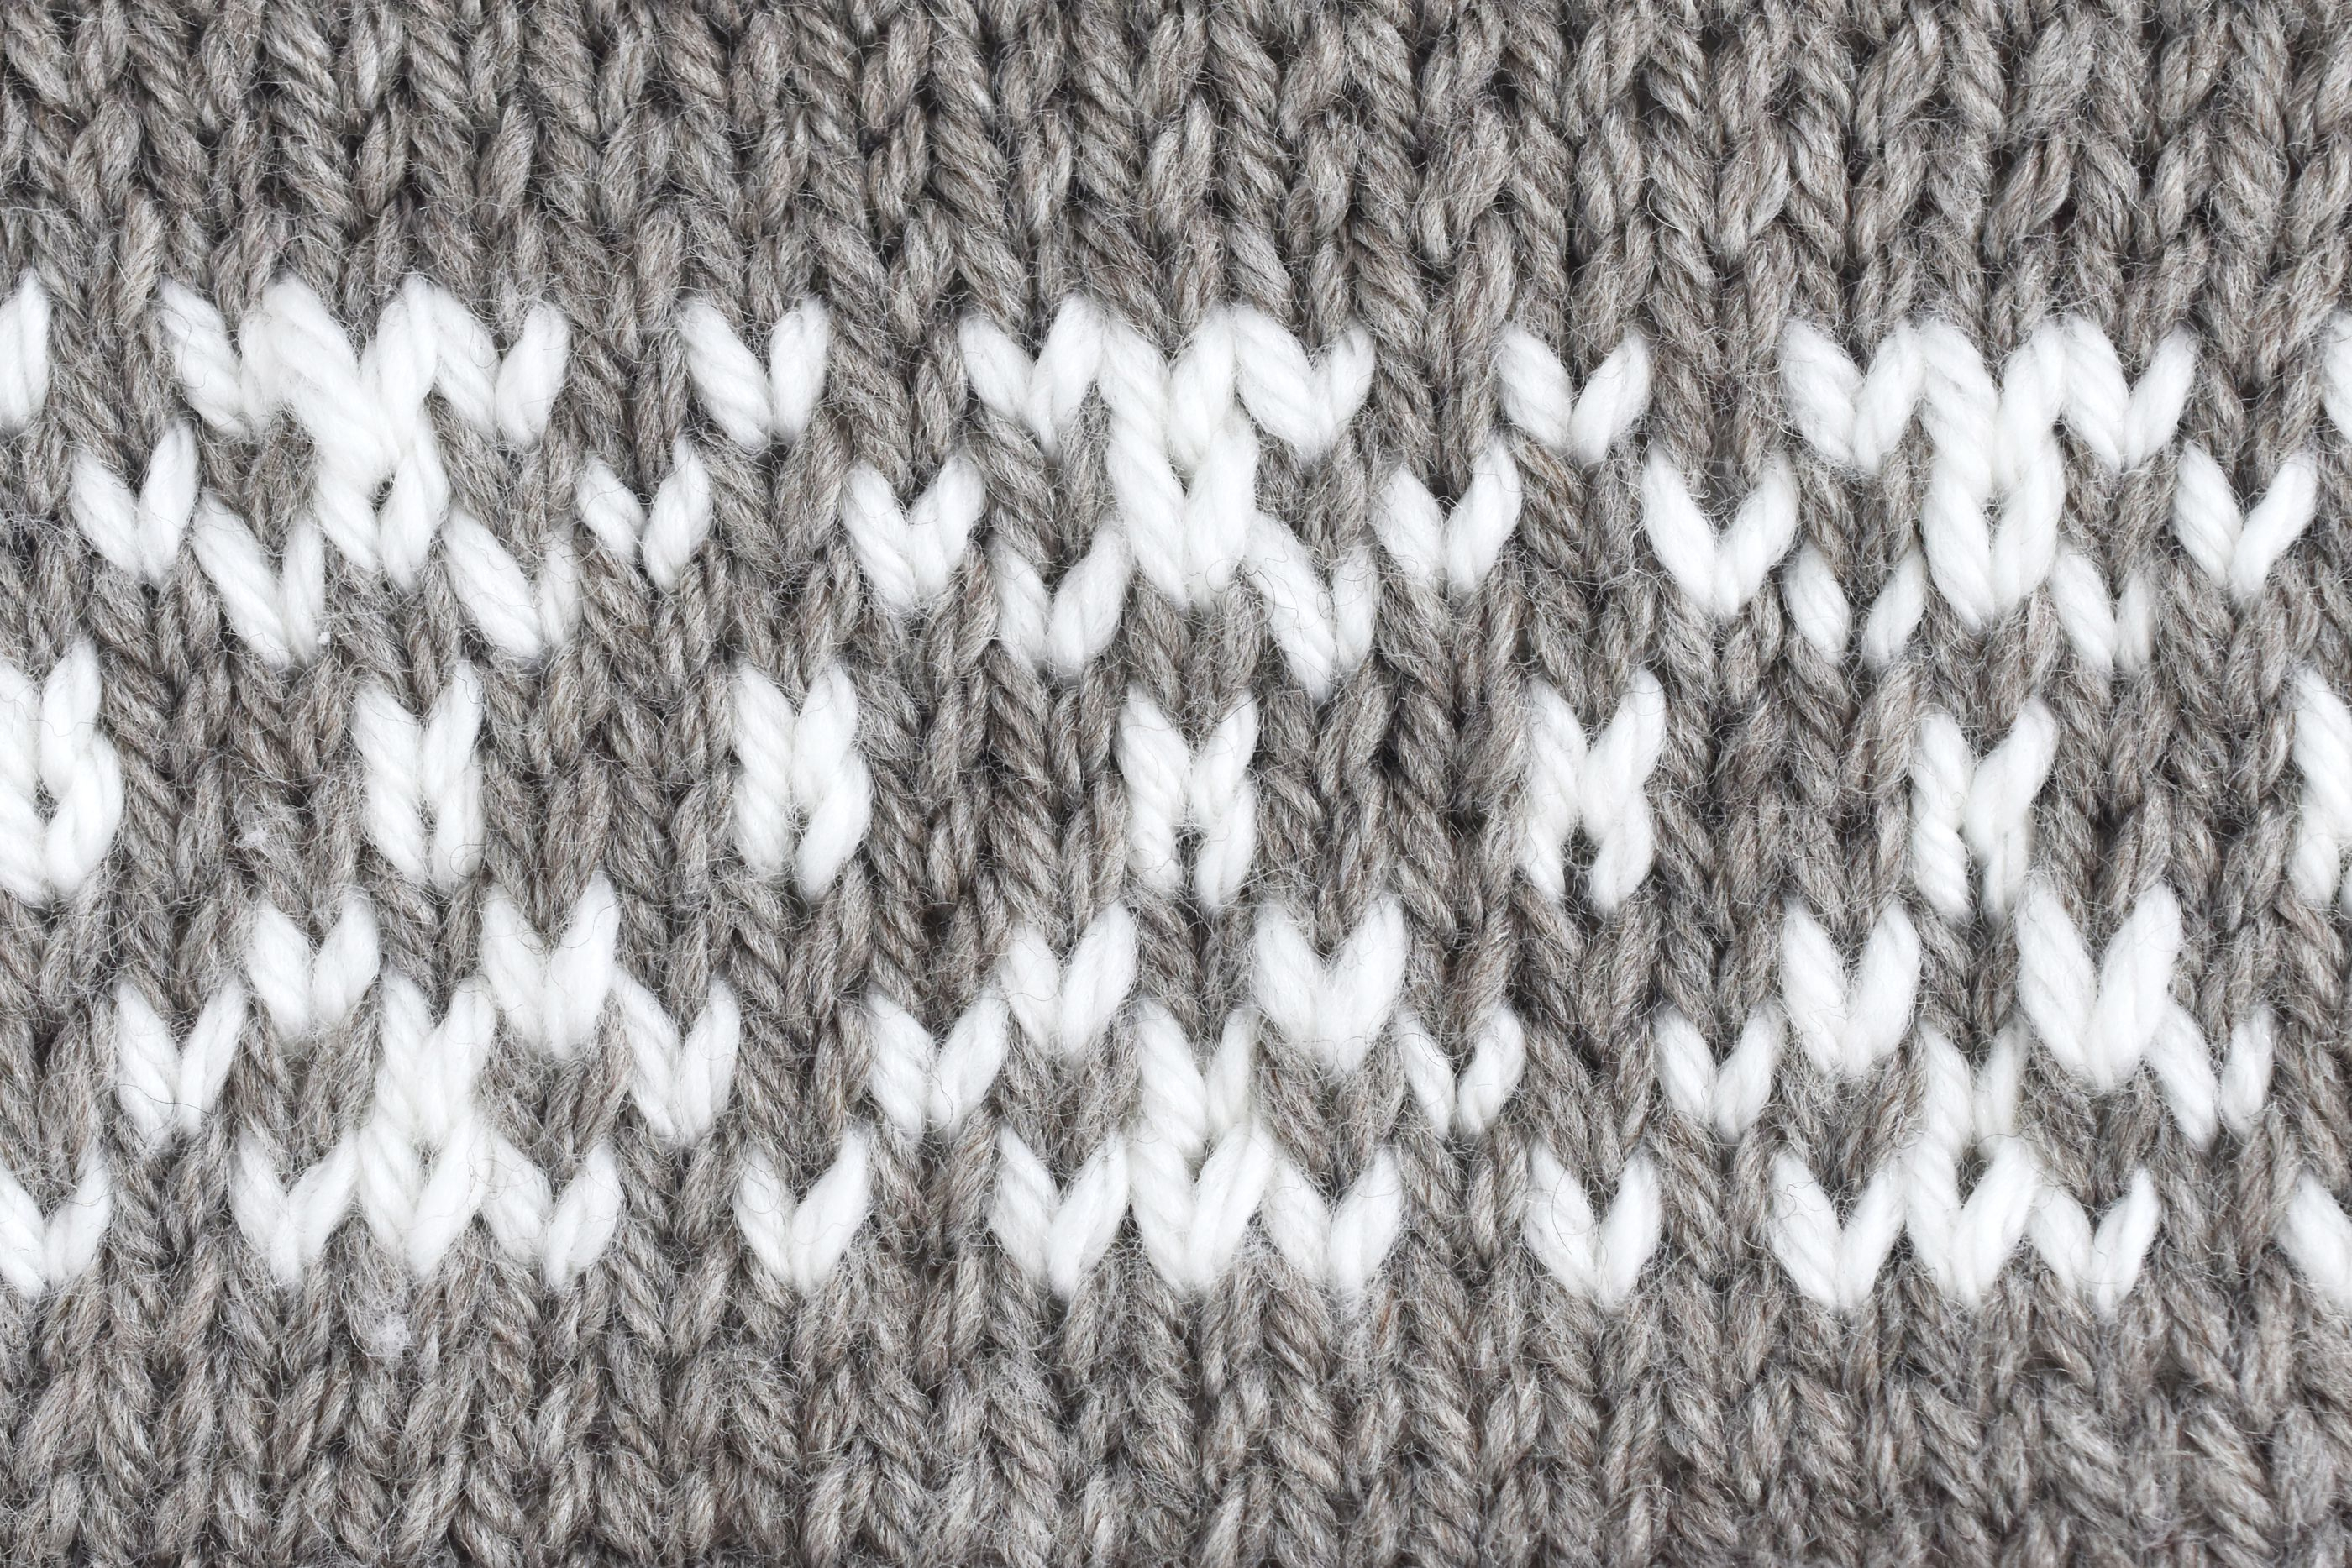 Intarsia Knit Patterns Fair Islestranded Knitting Tutorial